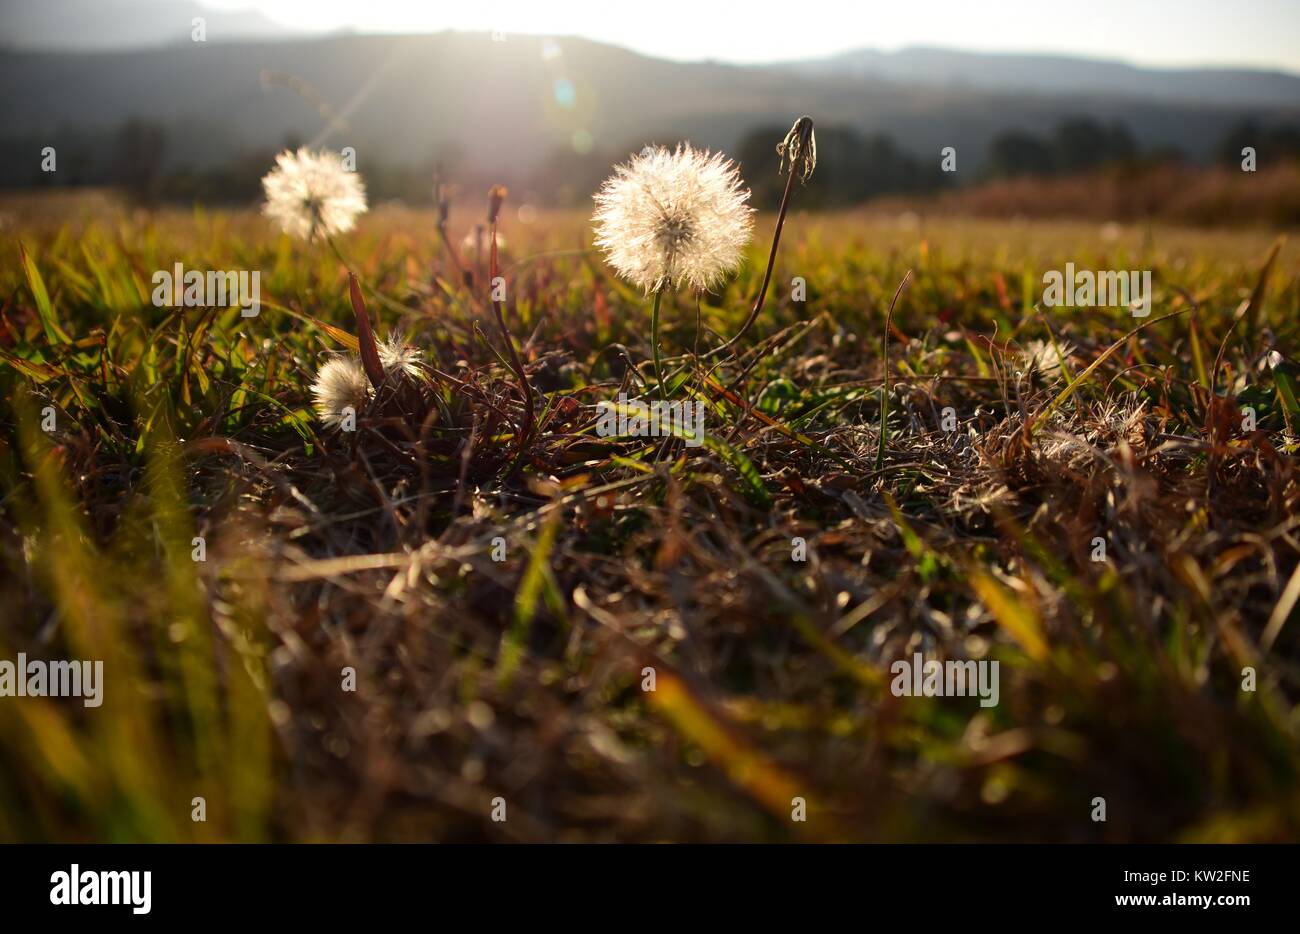 Graines de pissenlit dans un champ d'herbe verte, tourné à un angle faible avec le soleil en contre-jour et montagnes dans l'arrière-plan lointain Banque D'Images